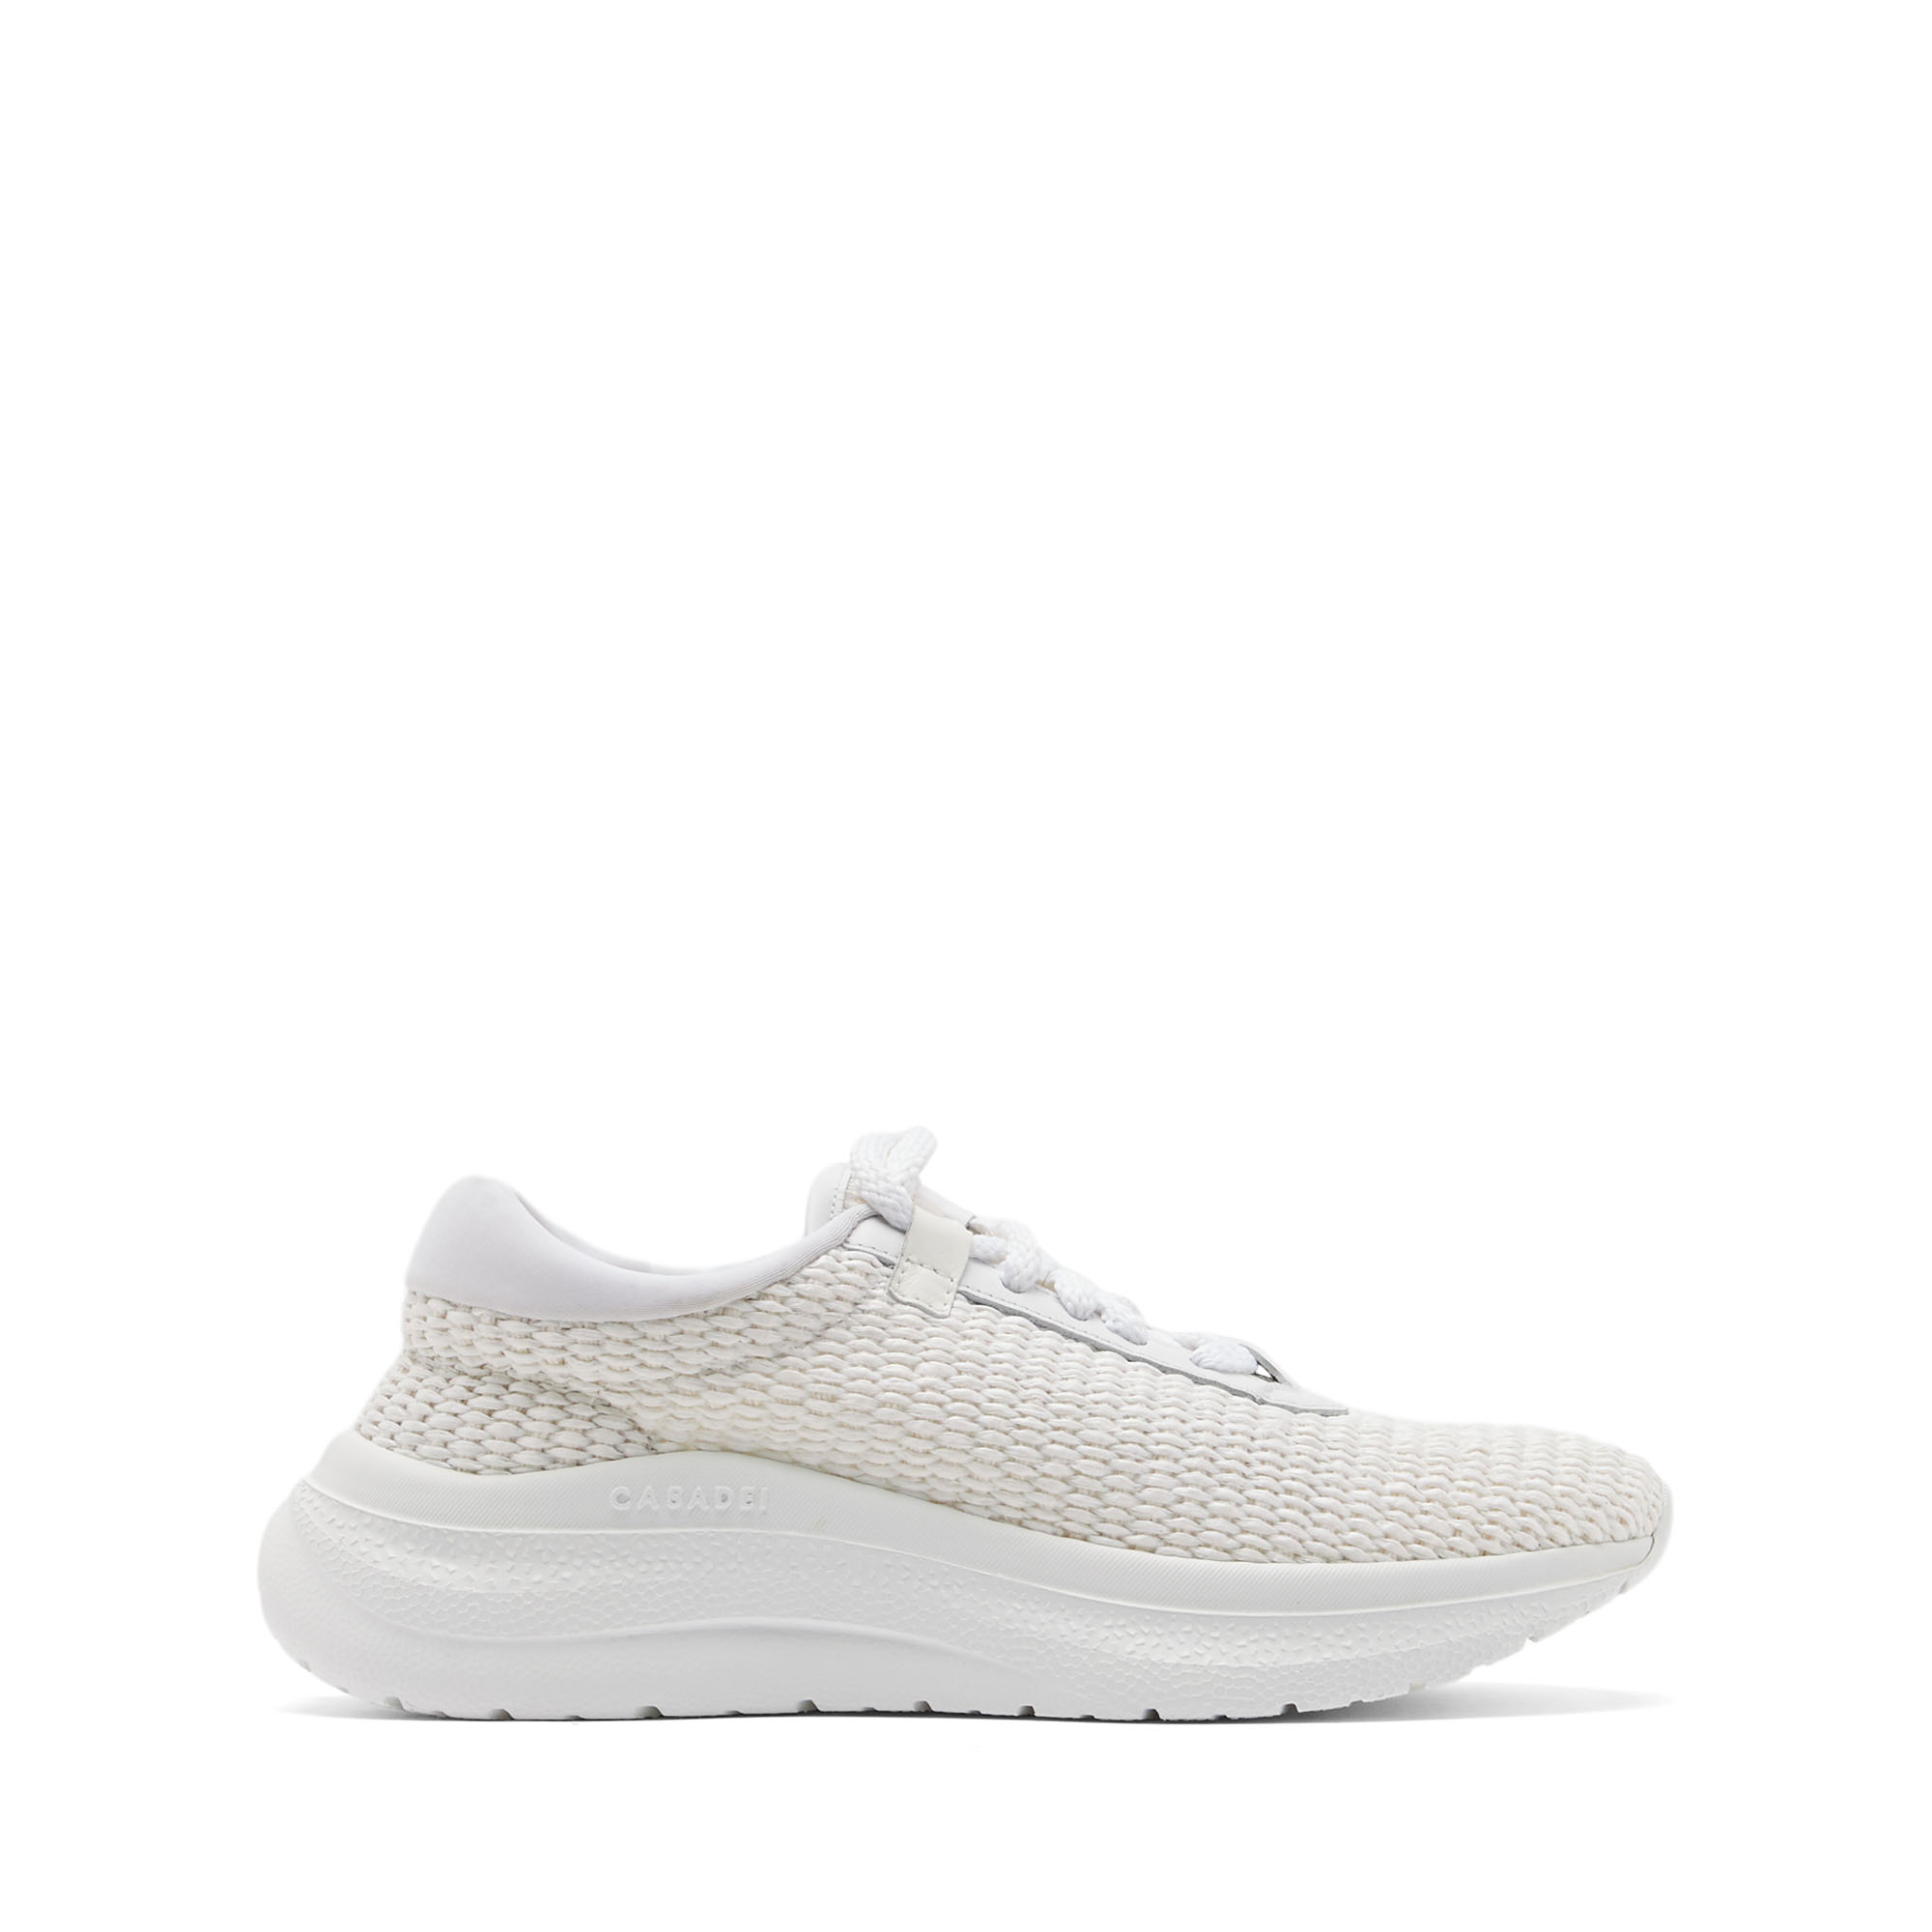 Casadei Mia Sneakers - Woman Sneakers White 37